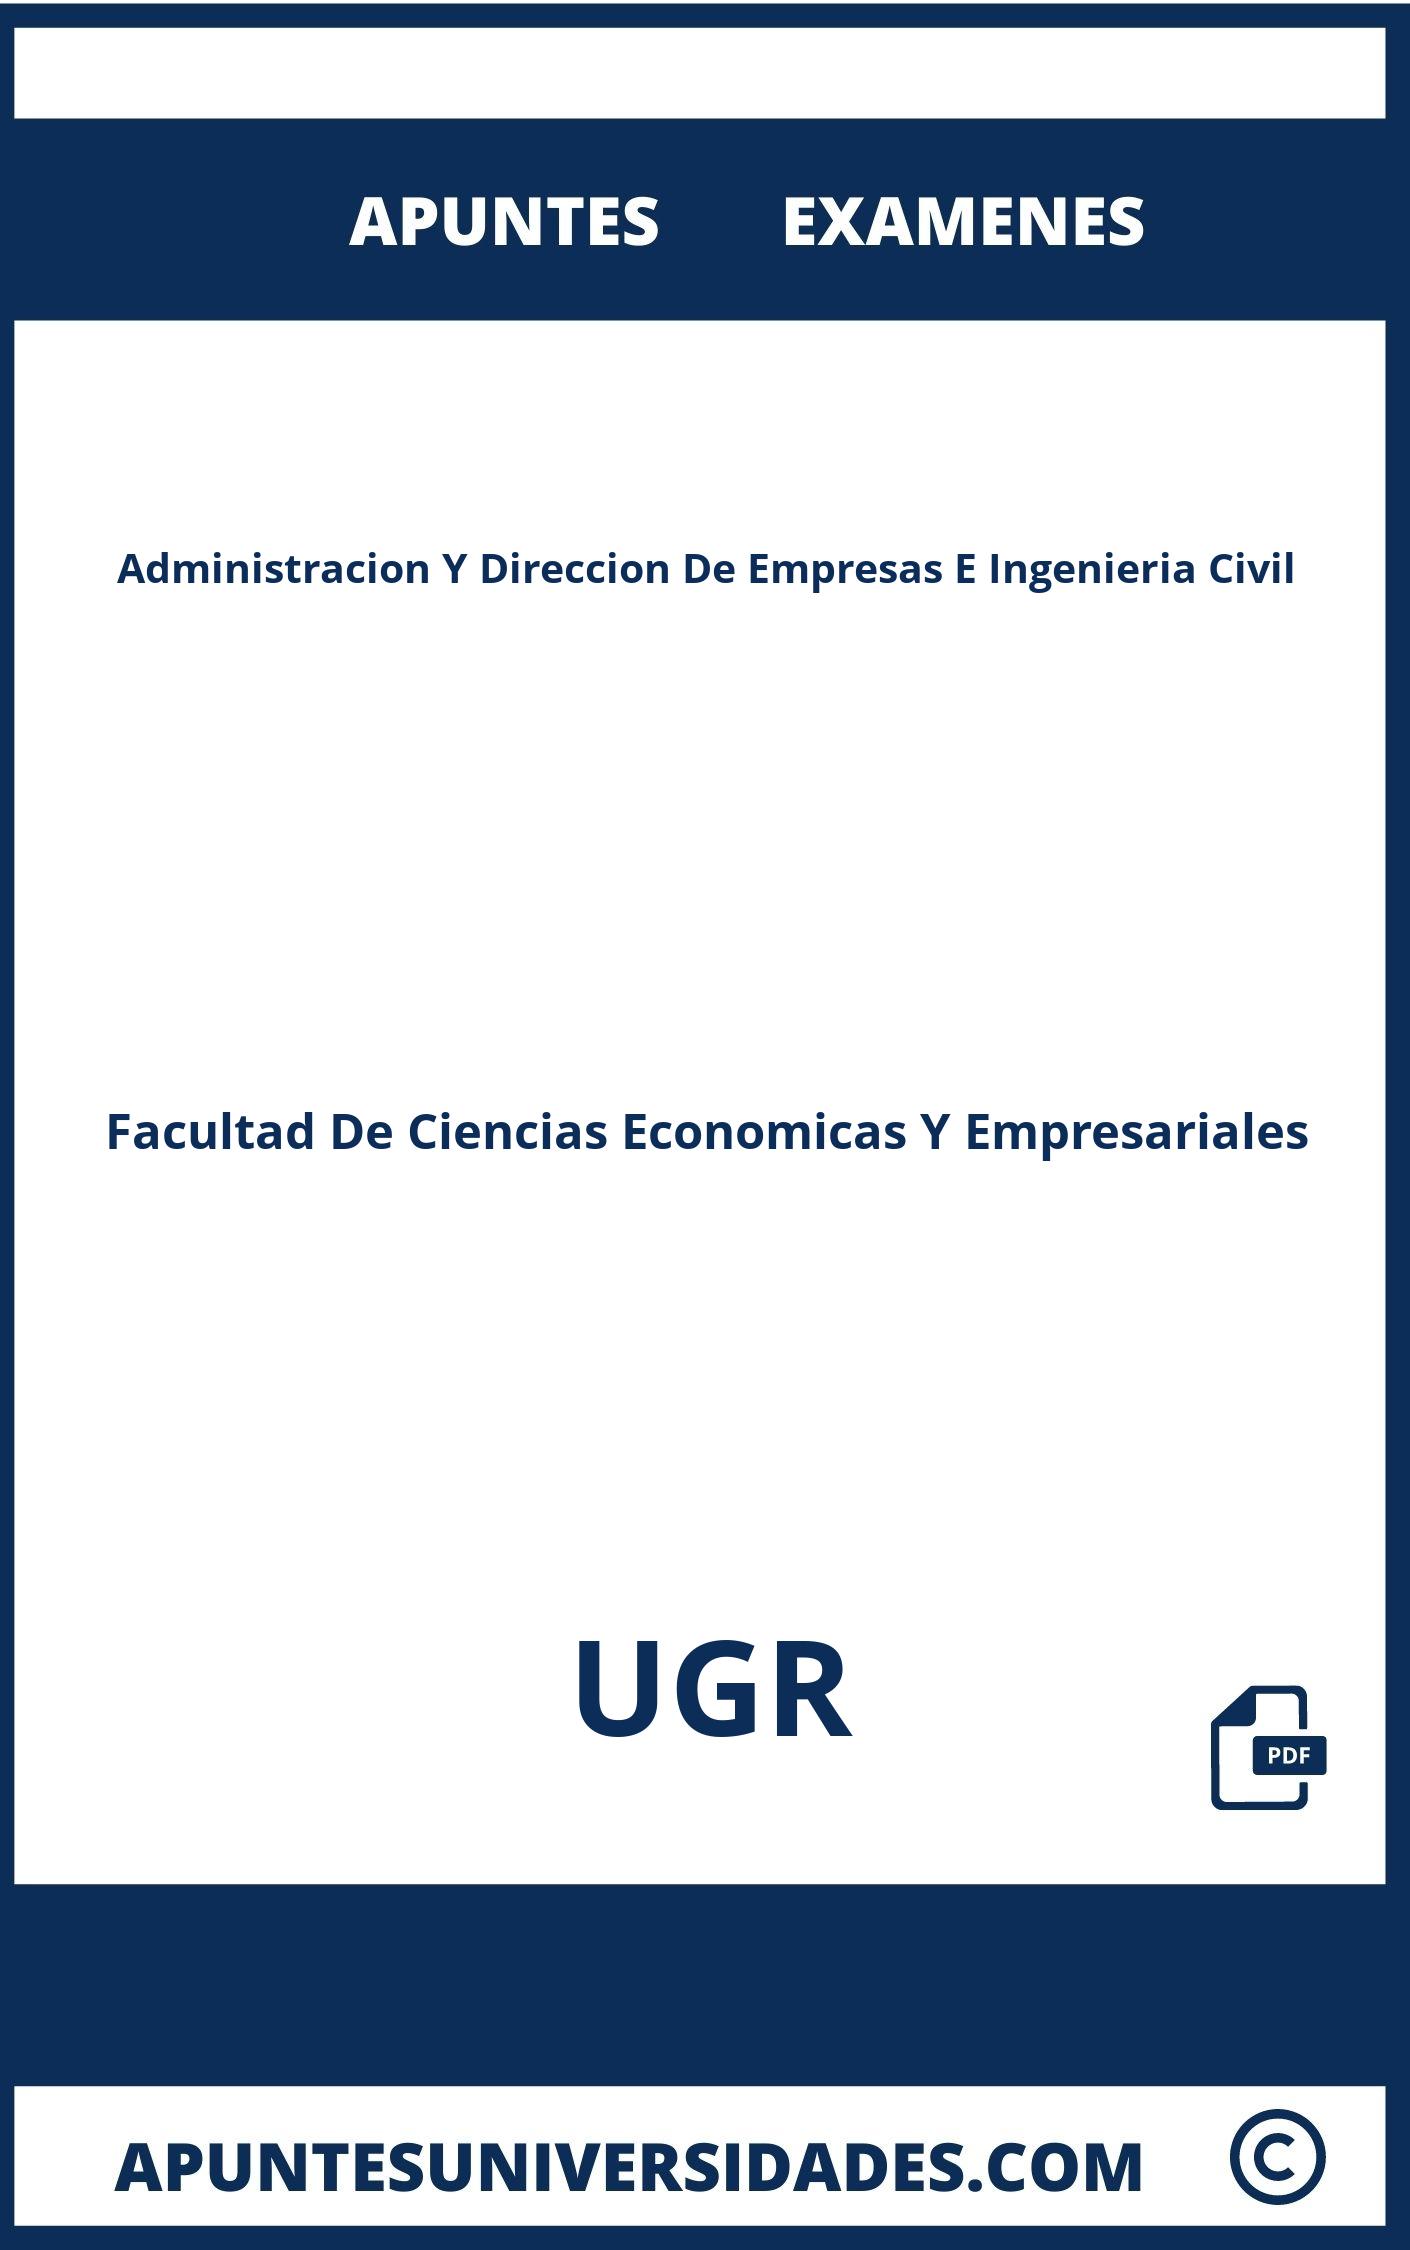 Apuntes y Examenes de Administracion Y Direccion De Empresas E Ingenieria Civil UGR